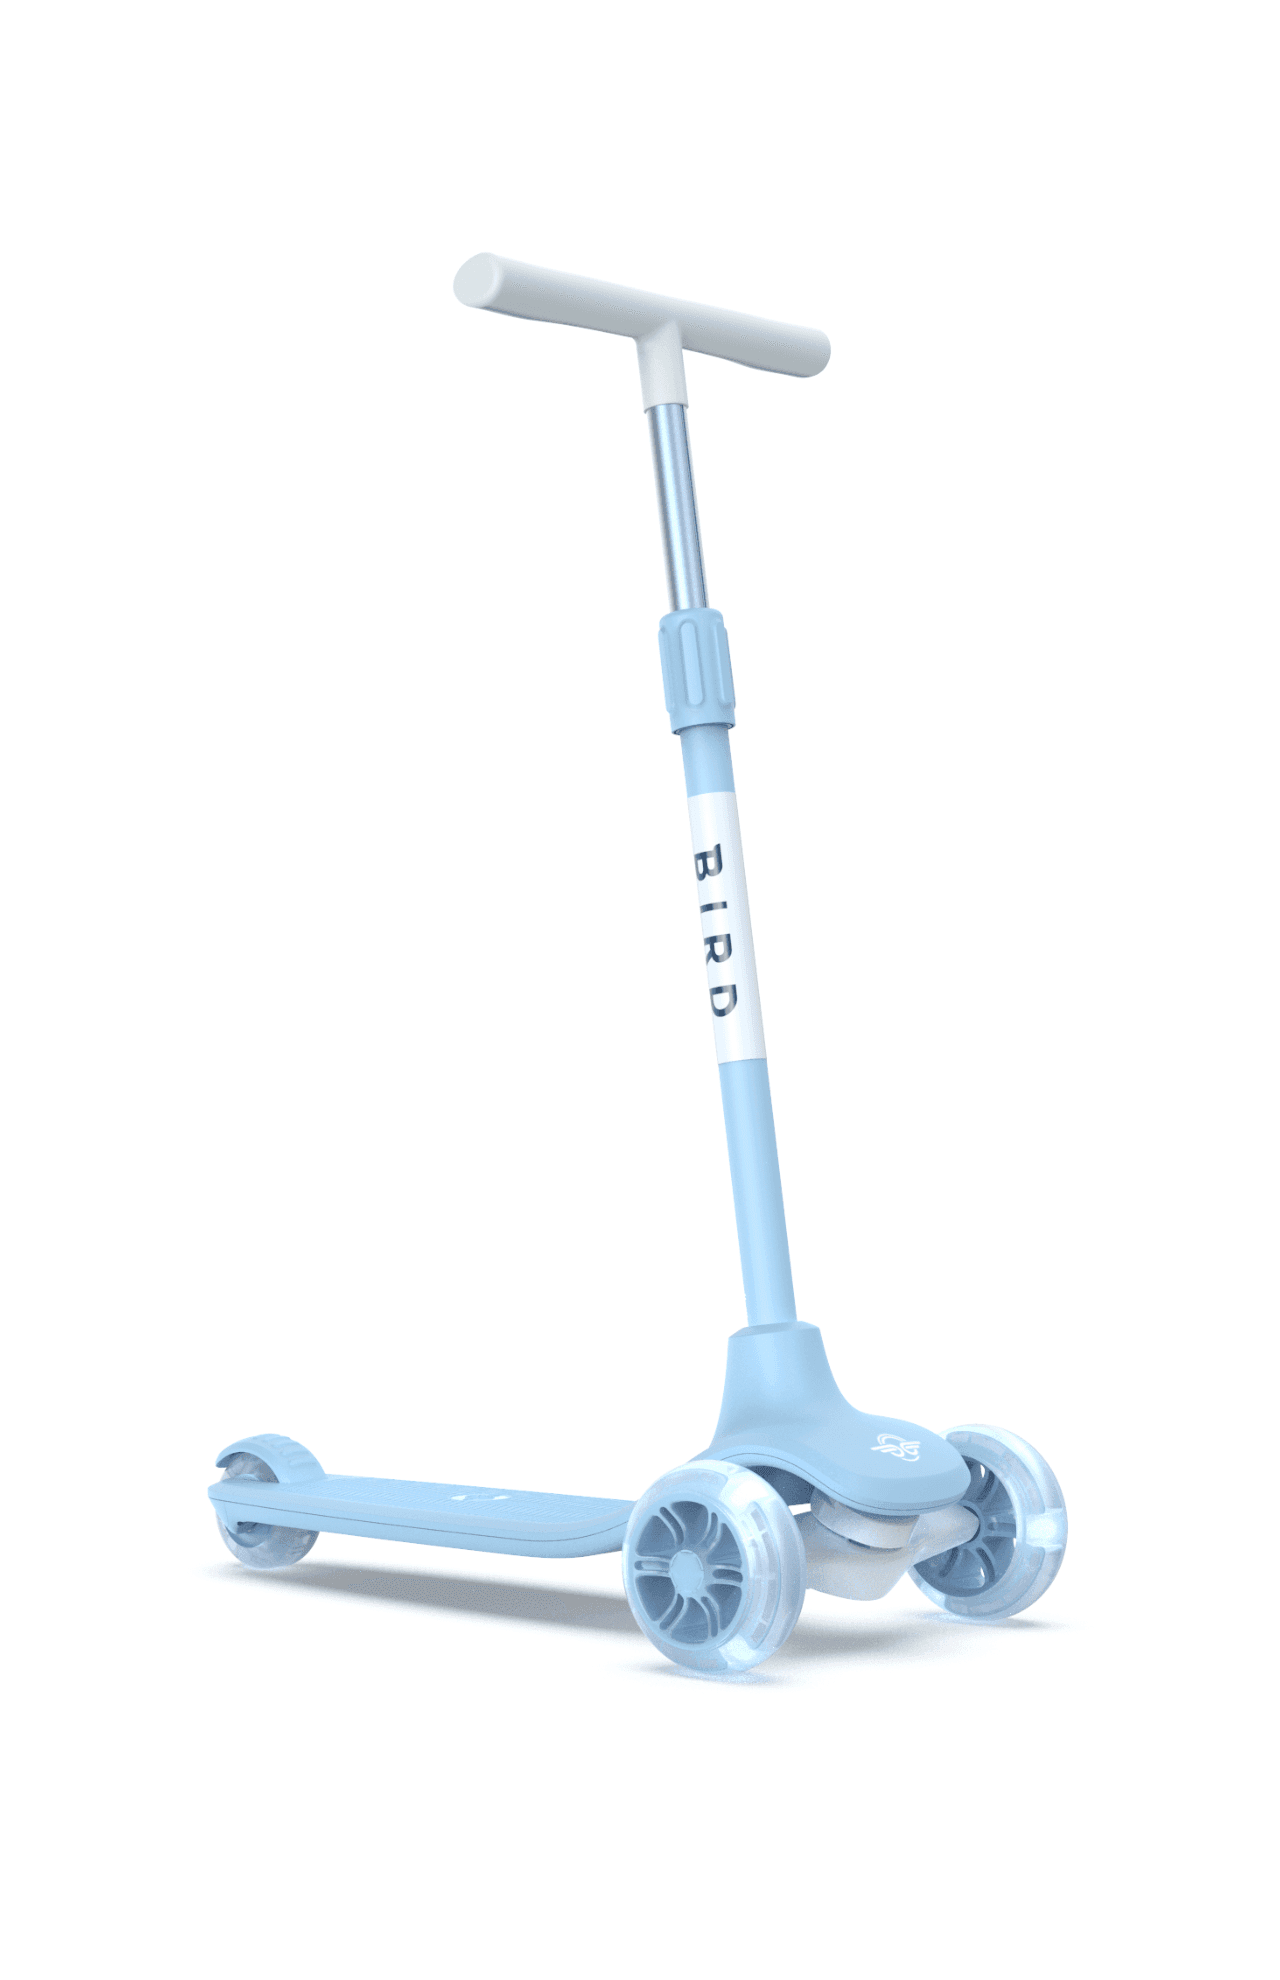 سكوتر ثلاثي العجلات للأطفال بأضواء ليد -أزرق Glow Kids Scooter -  Adjustable height, 3-wheels design, Stomp brake system - Bird